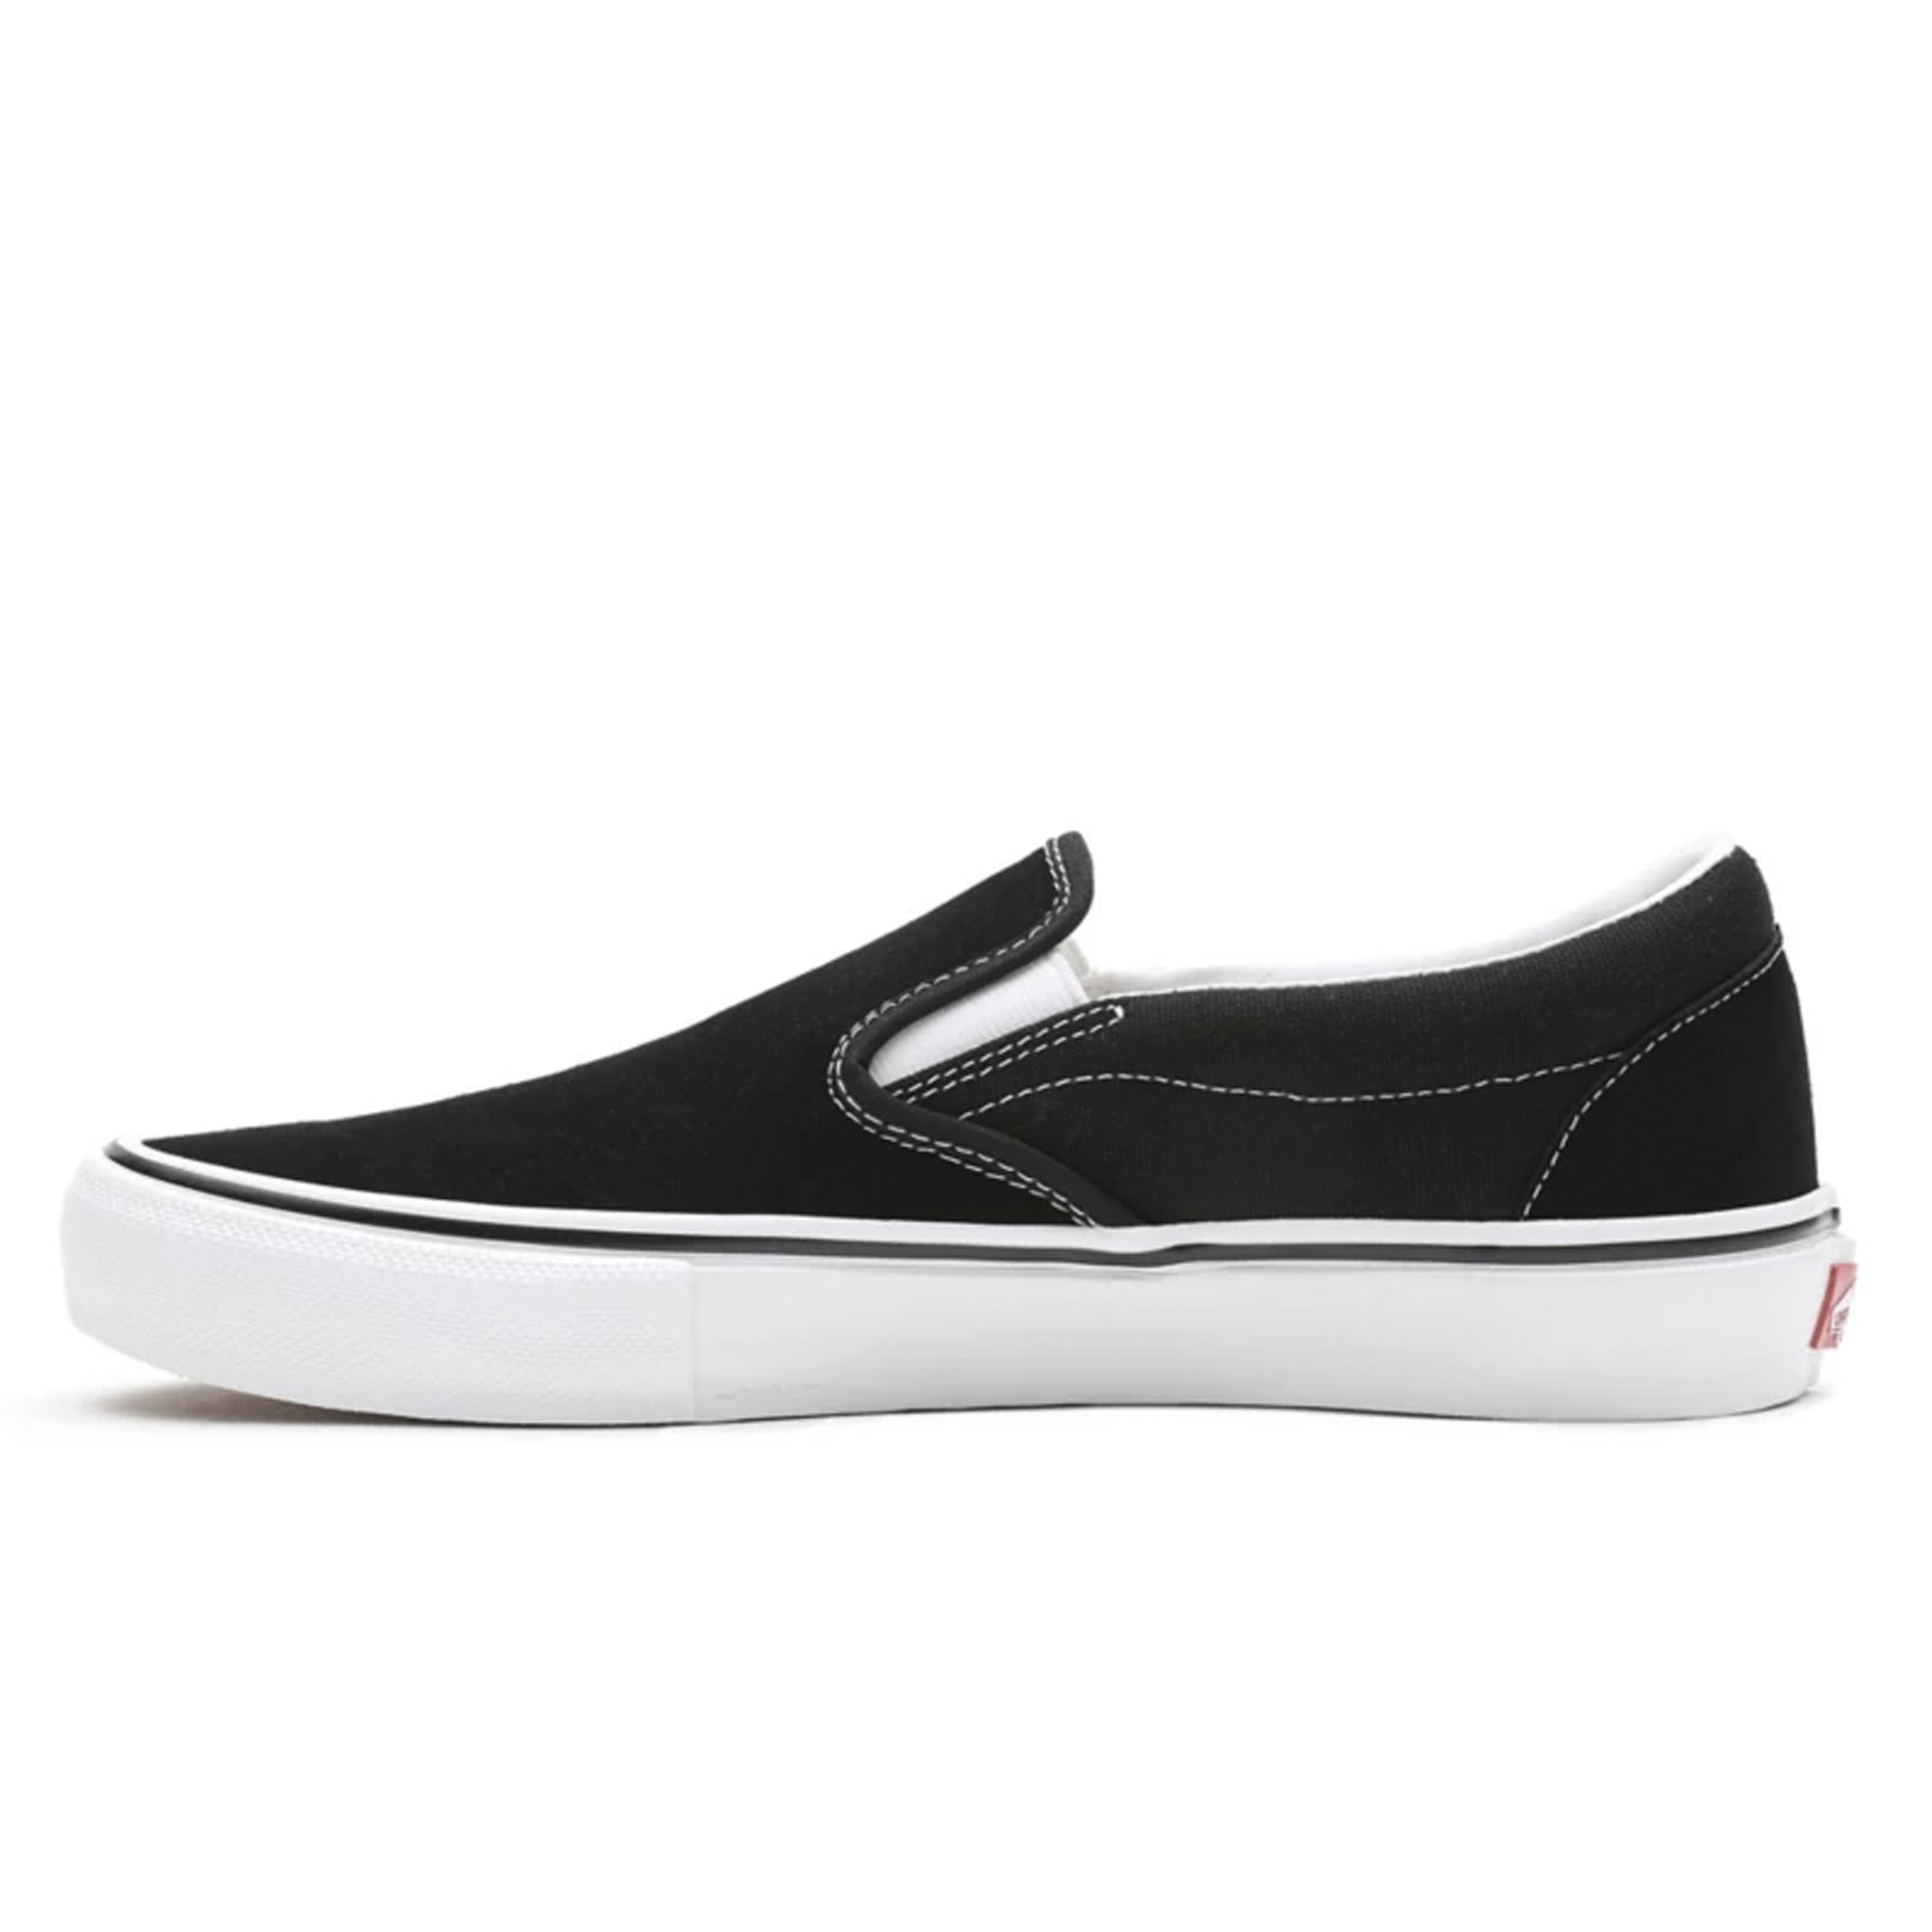 Vans Skate Classics Slip-On (Black/White) - VN0A5FCAY28 - Consortium